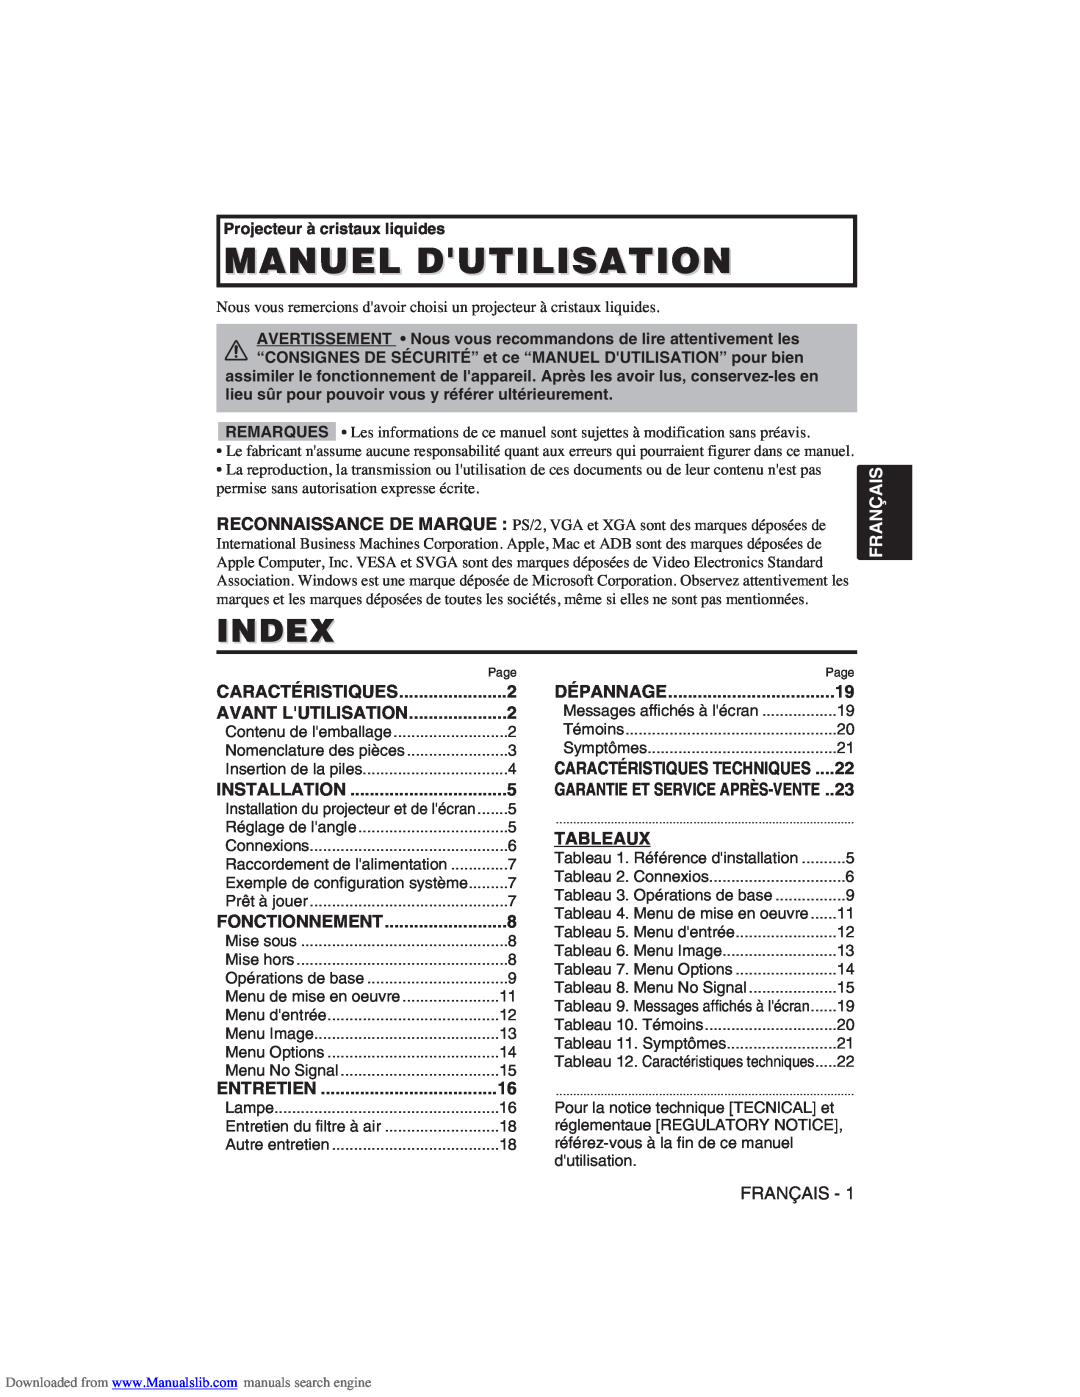 Hitachi CP-X275W user manual Manuel Dutilisation, Index, Français, Tableaux 